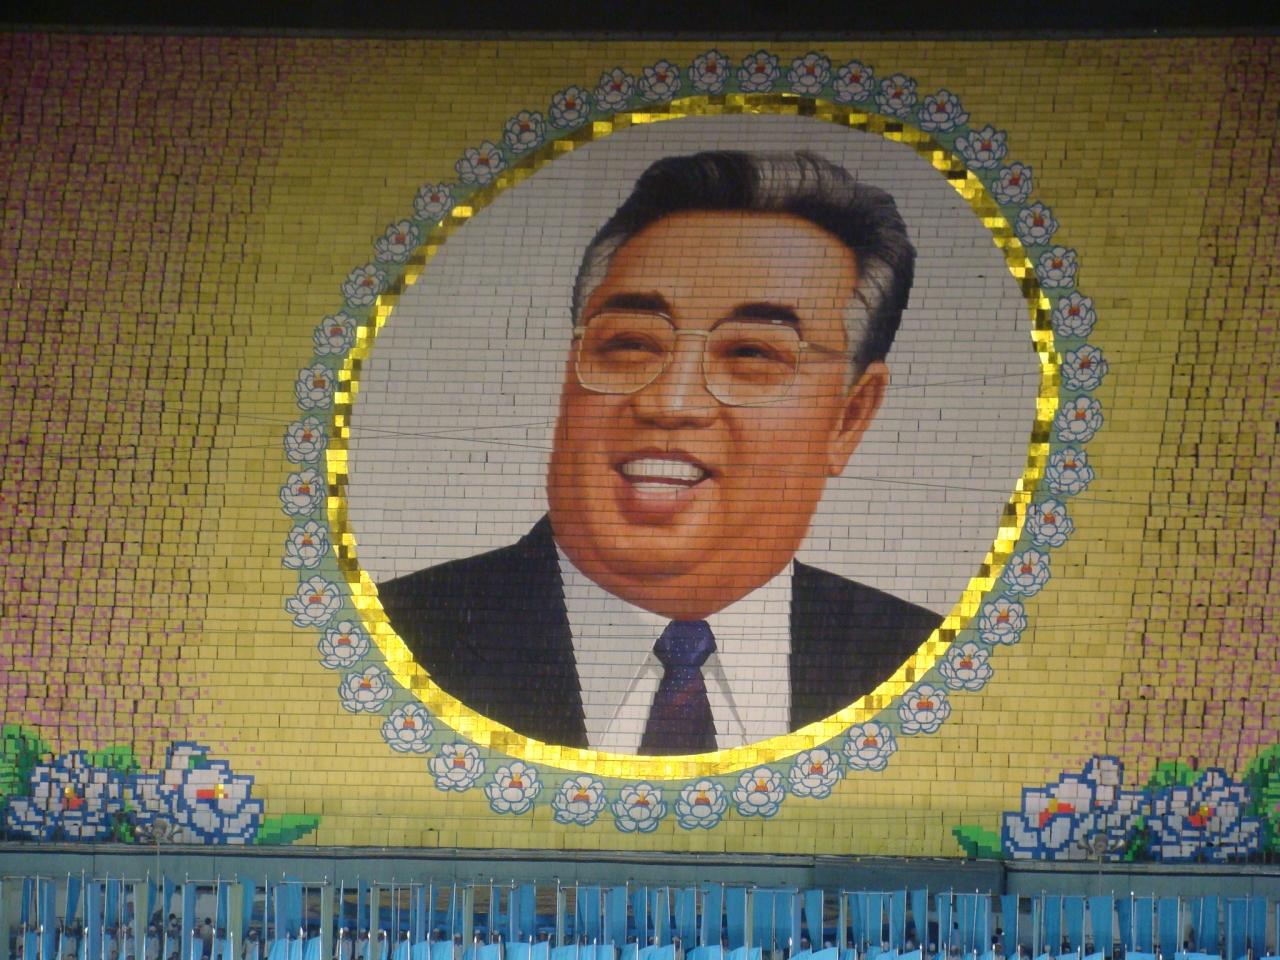 北朝鮮ピョンヤン Part 2 夢のアリラン祭 感動と興奮 ピョンヤン 北朝鮮 の旅行記 ブログ By パンガンさん フォートラベル